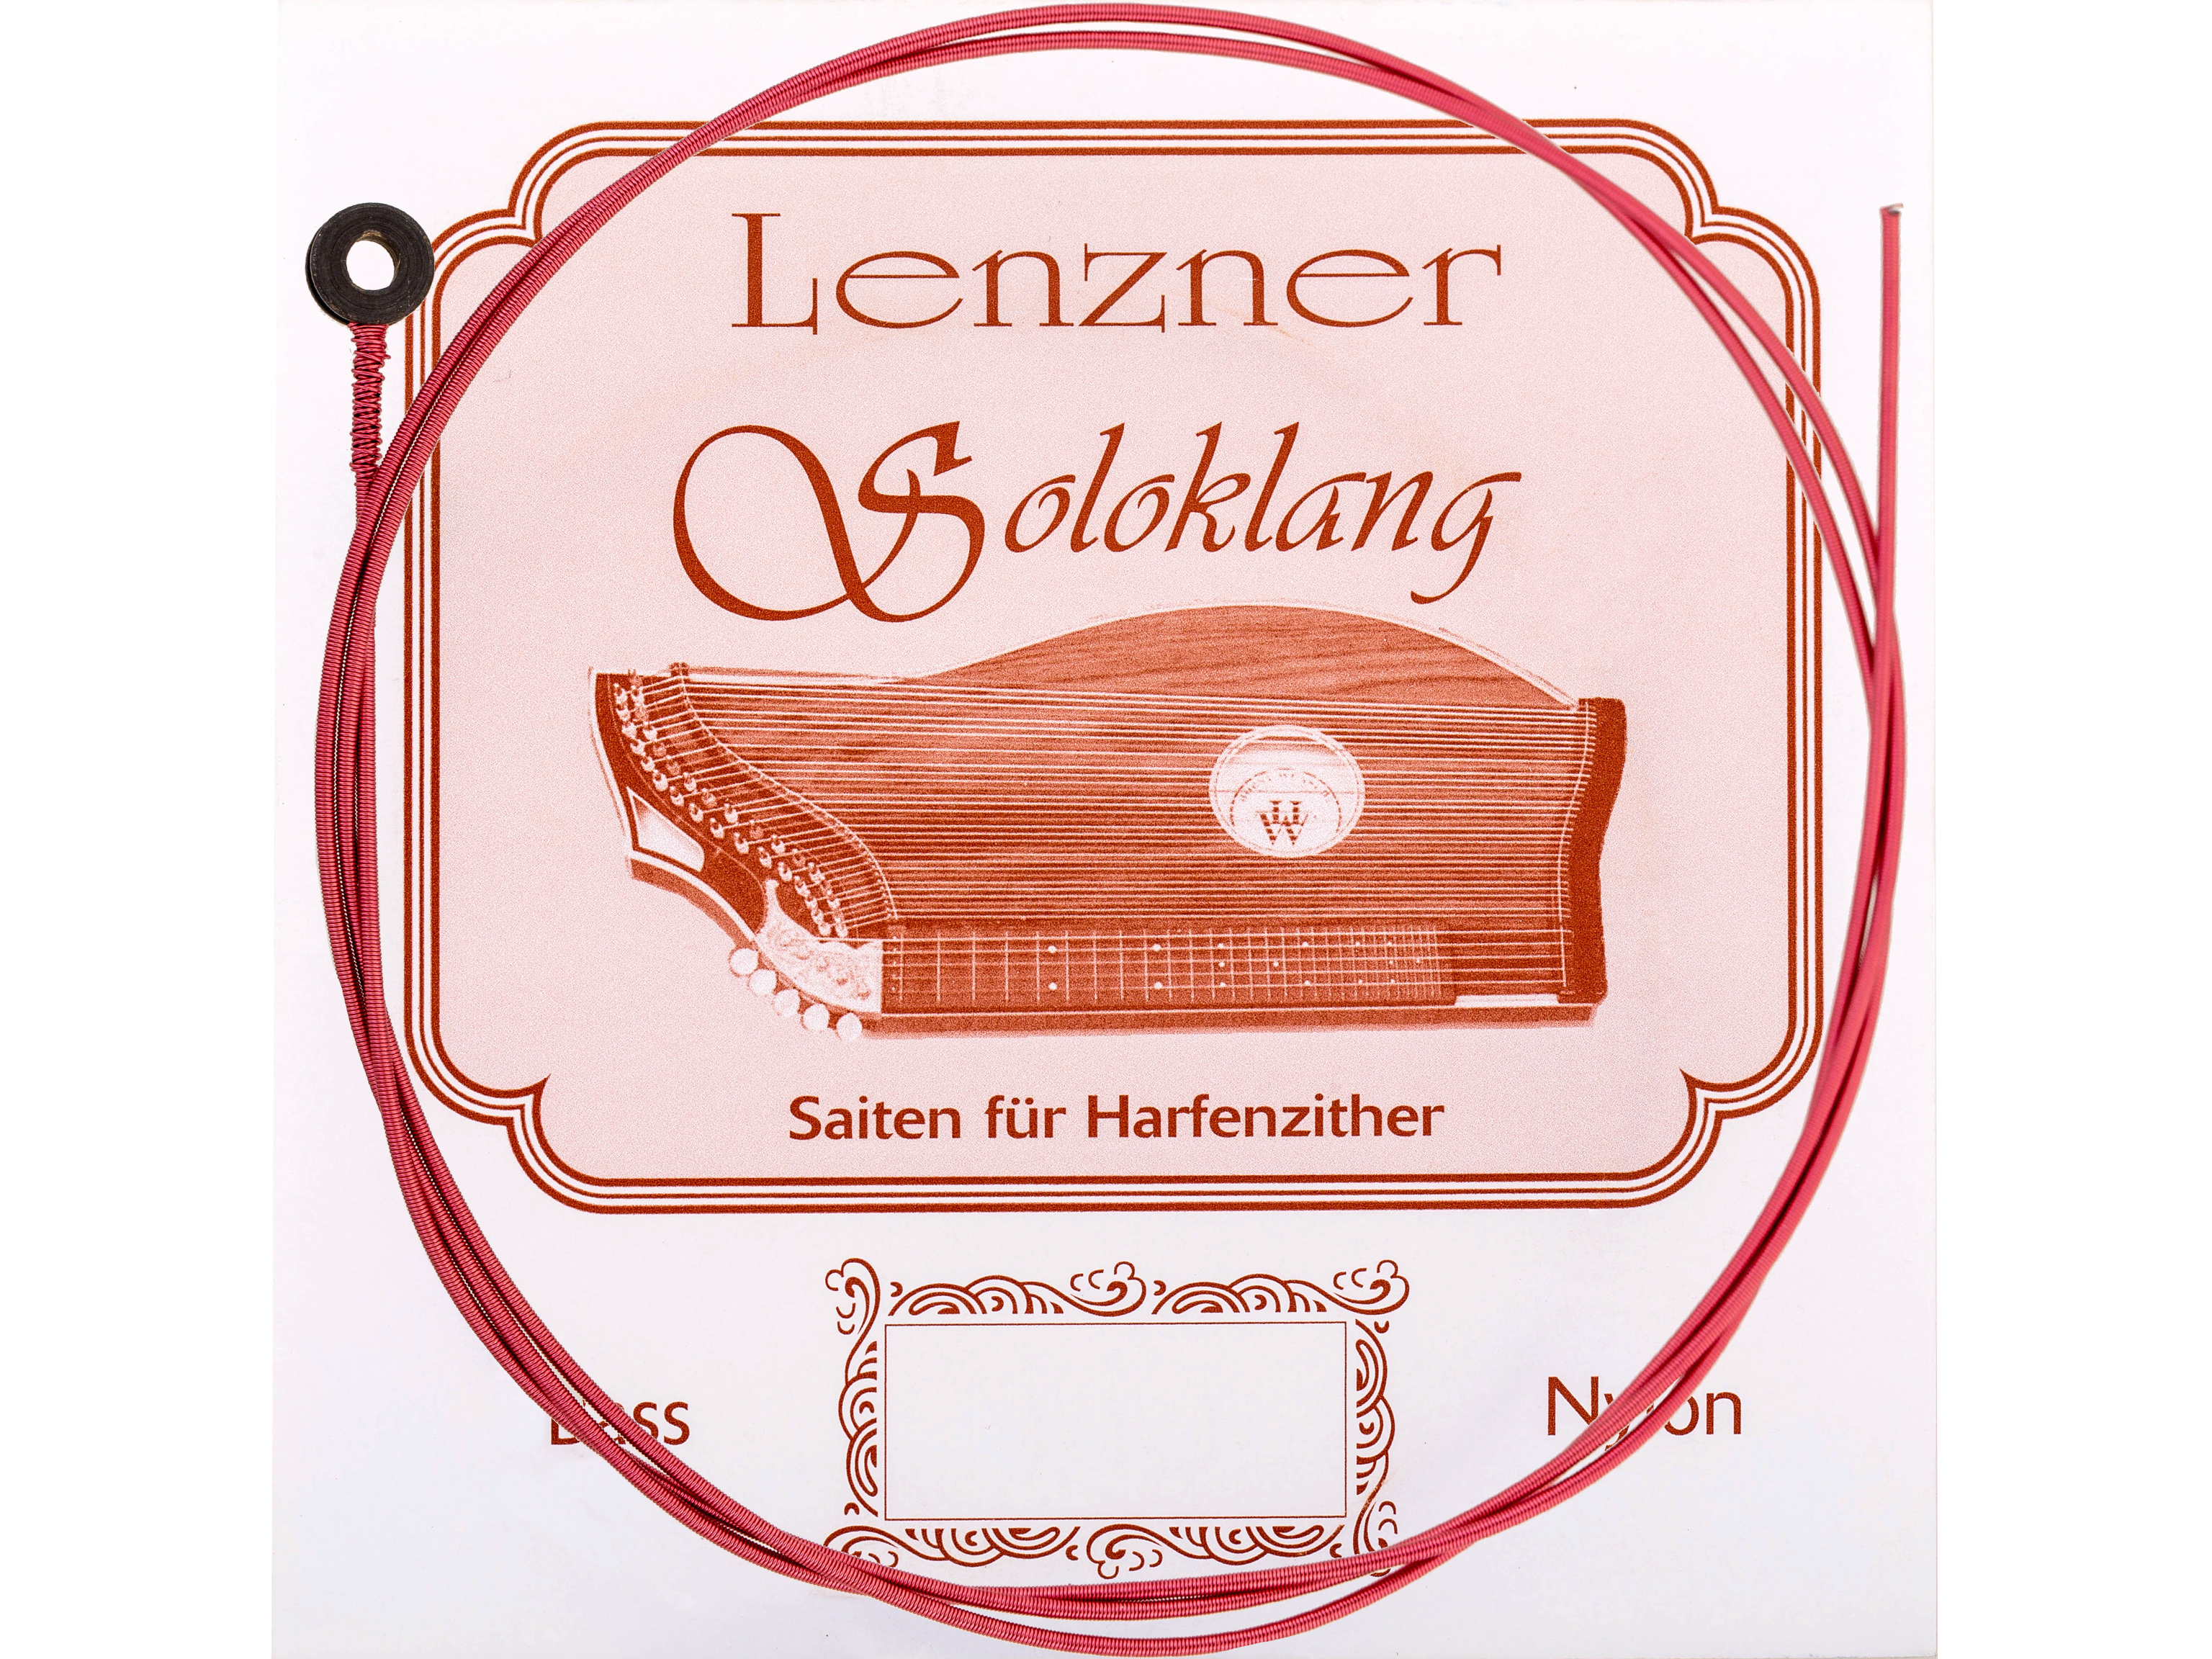 Lenzner H 21.Zithersaite Soloklang Bass